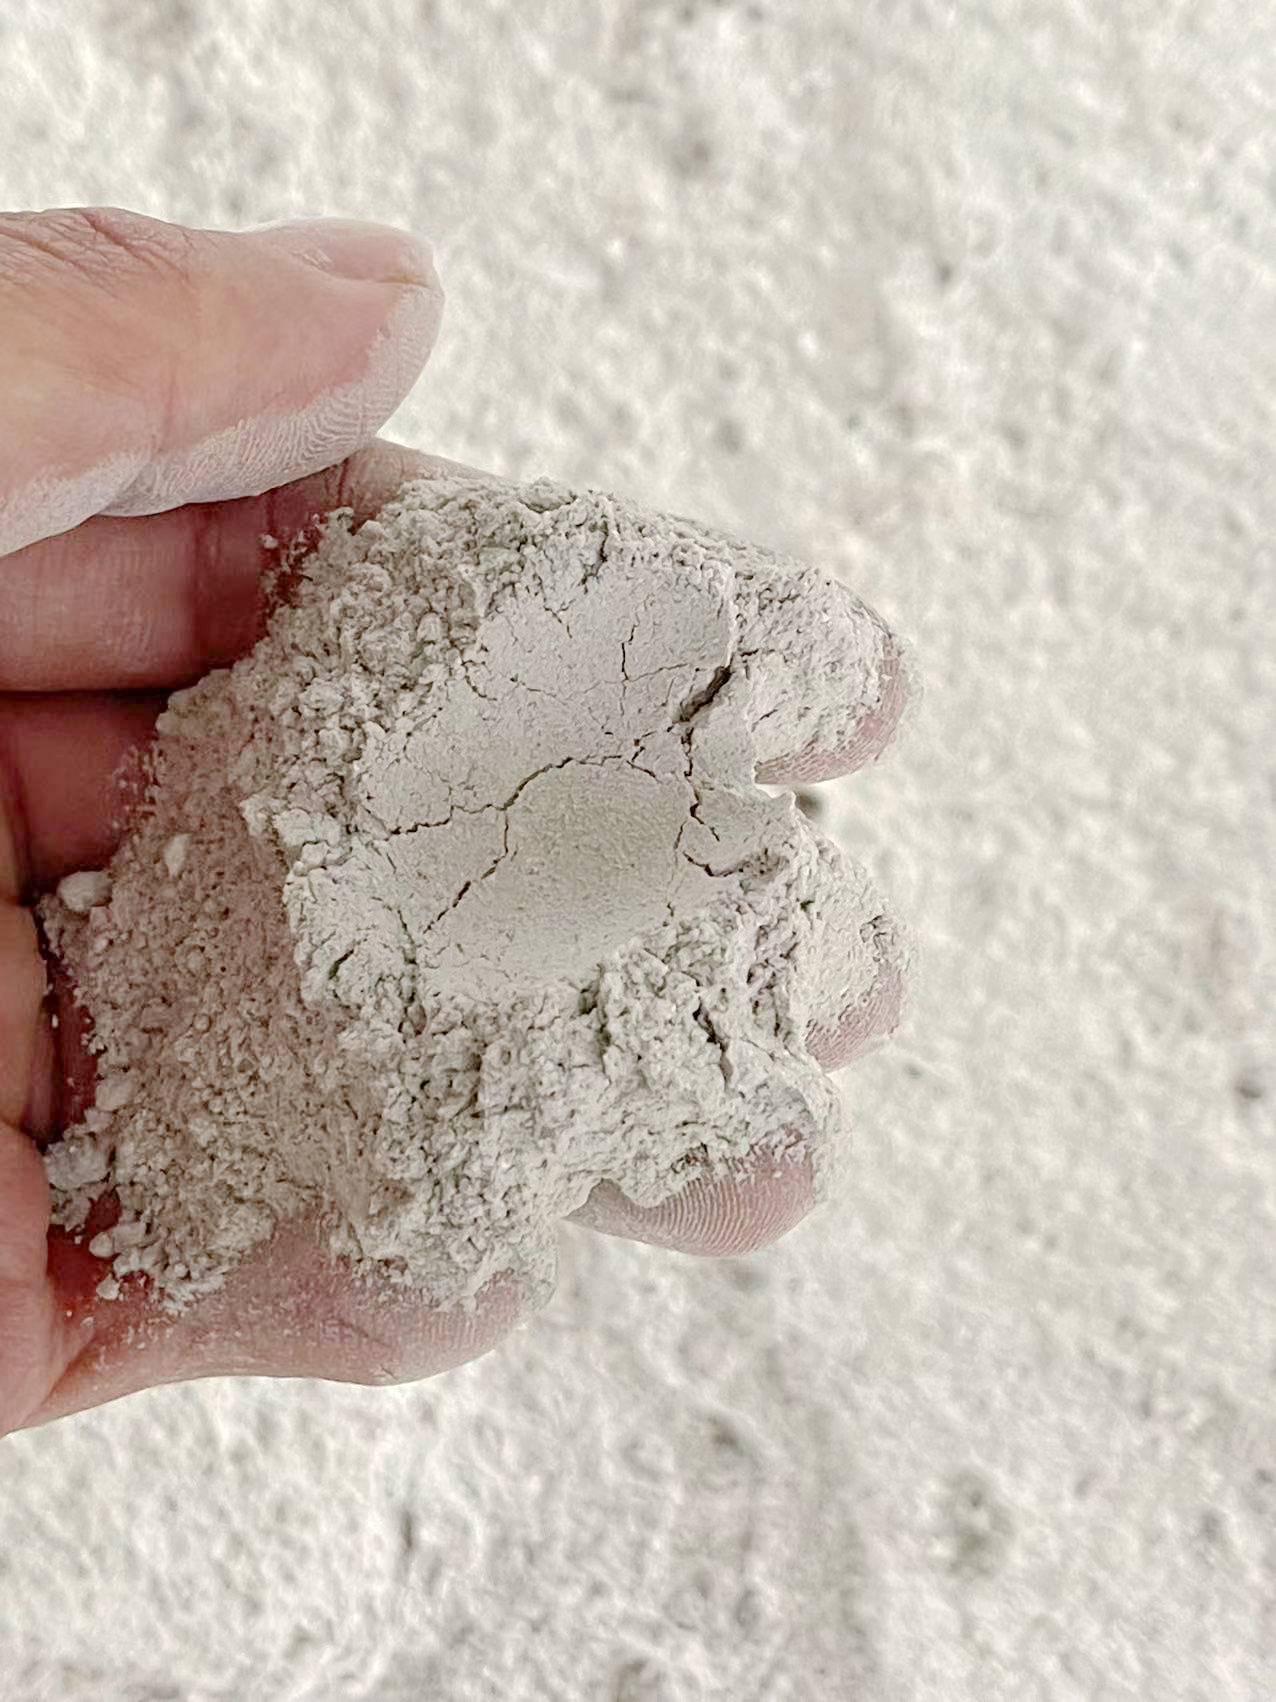 石灰 石灰粉 生石灰 氢氧化钙污水处理 石灰 石灰粉 生石灰 氢氧化钙 厂家批发价格 江西石灰厂家